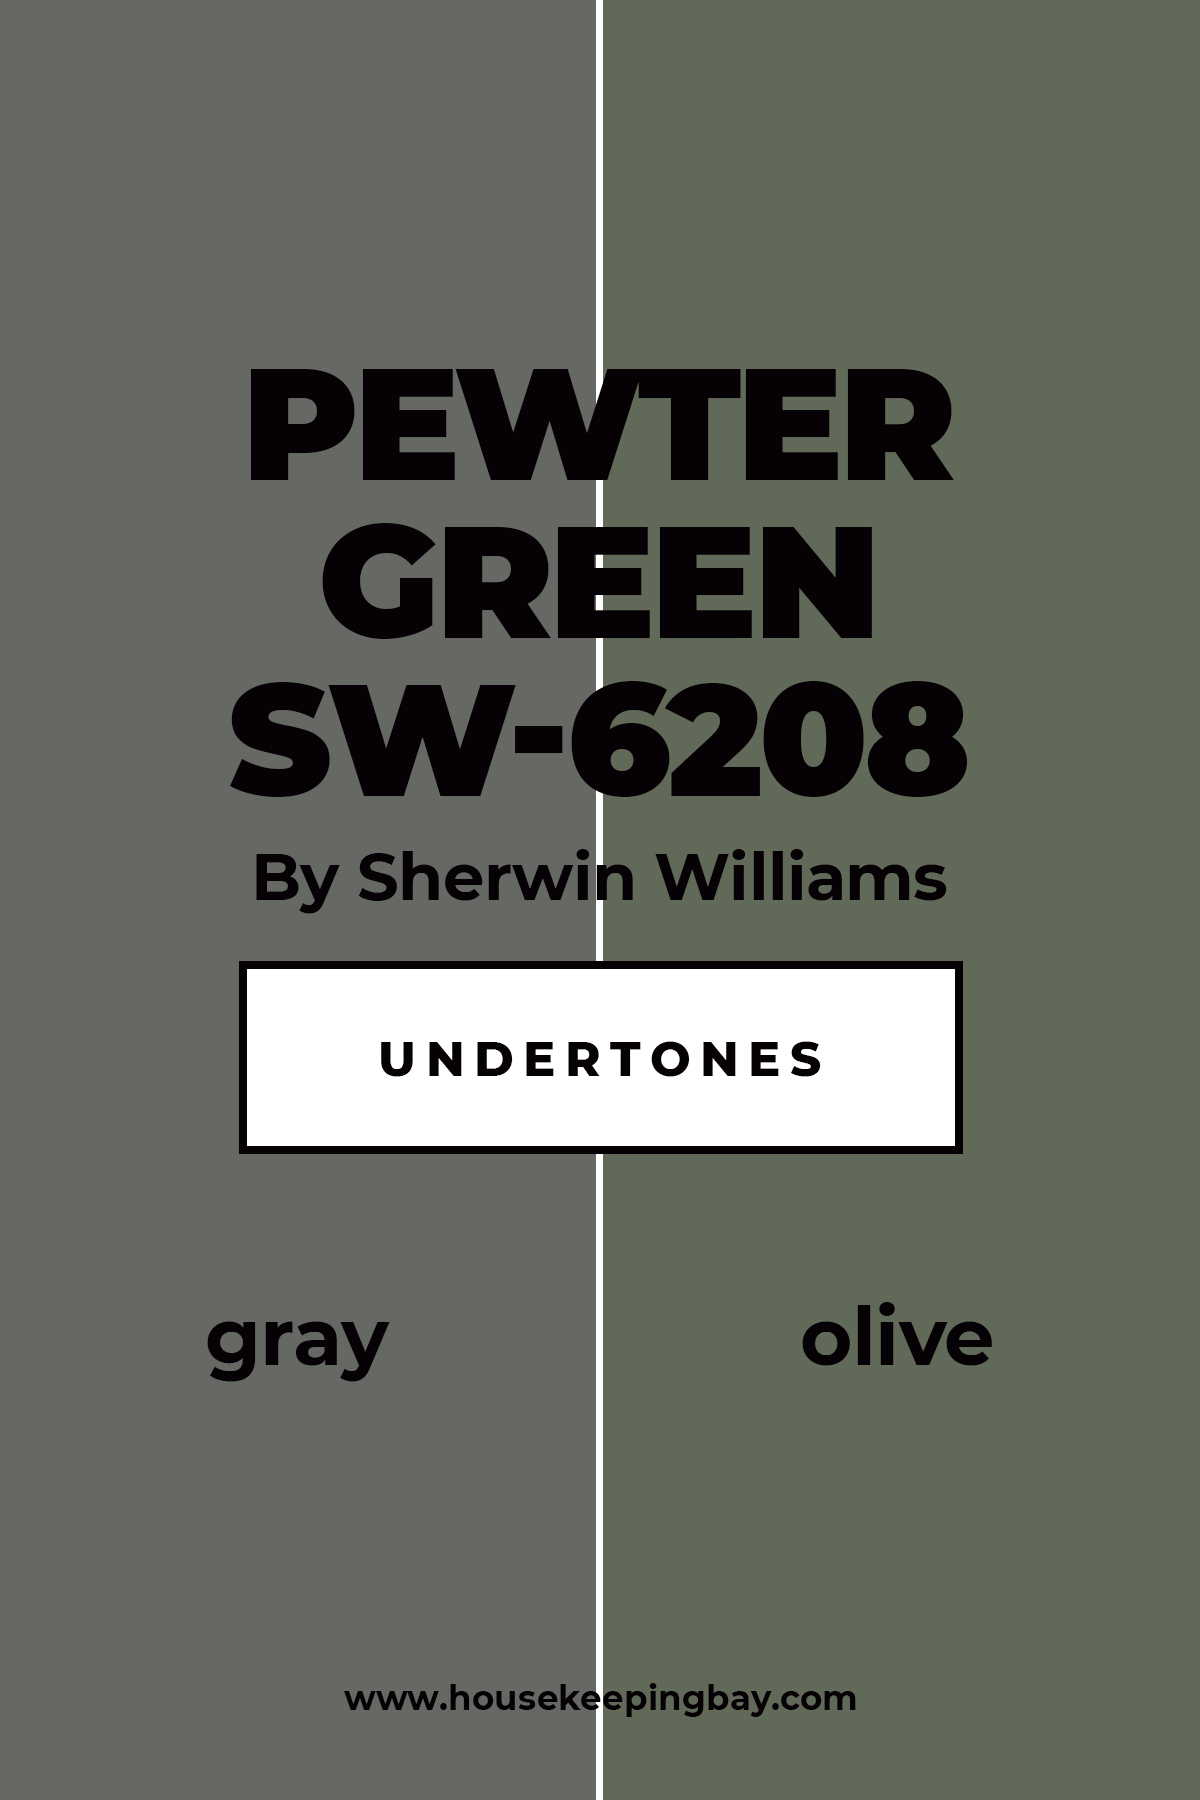 Pewter Green Undertones